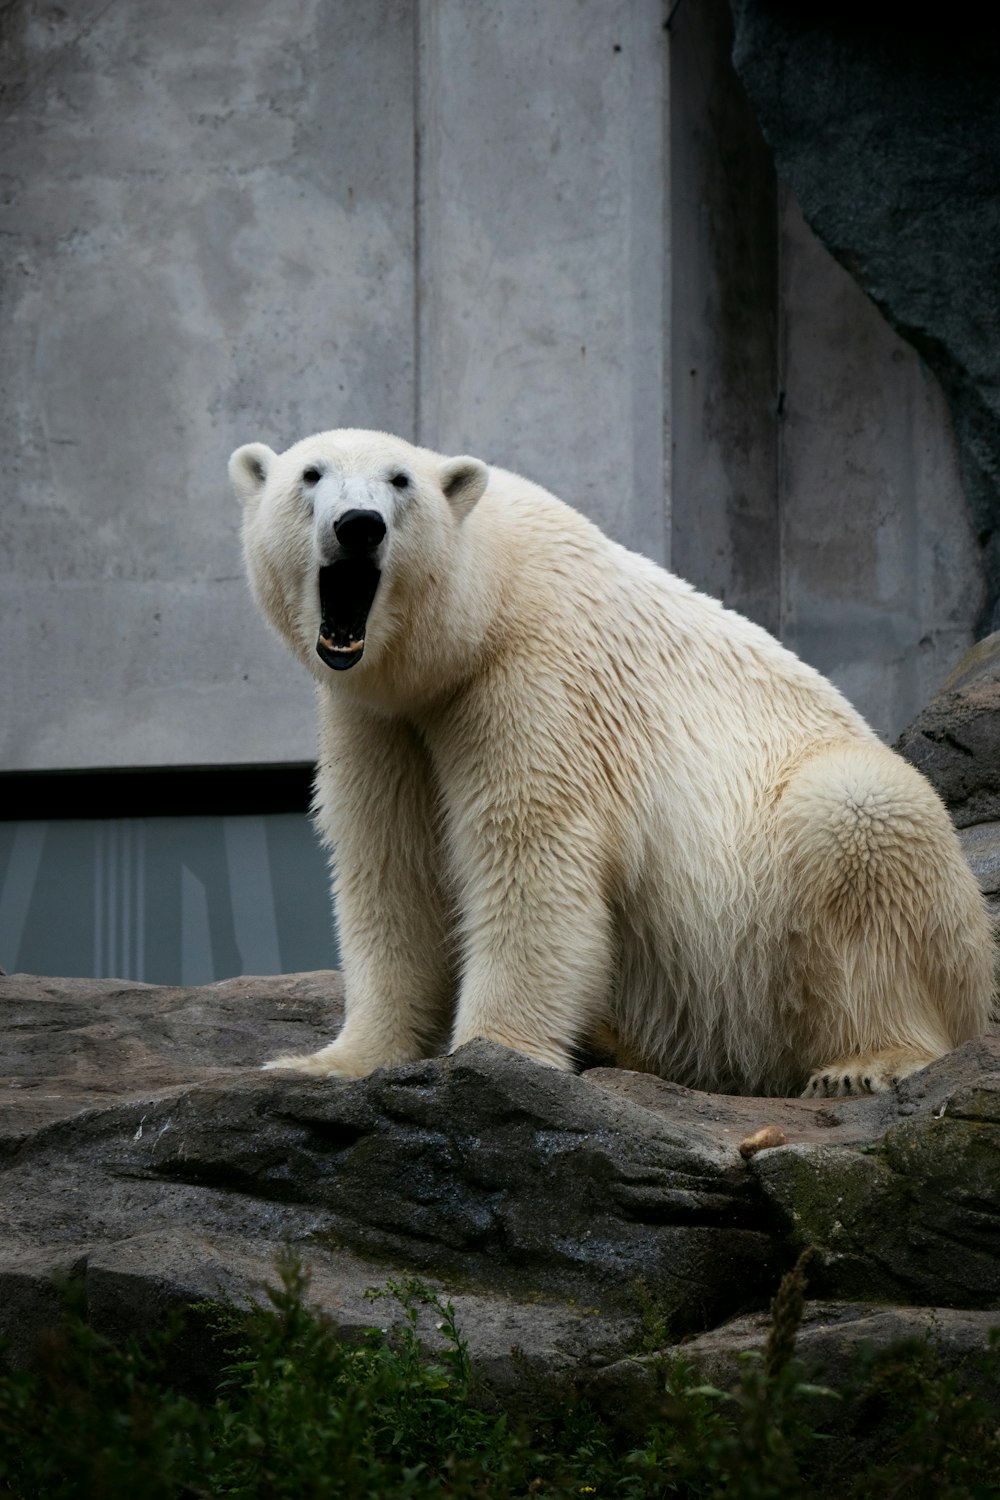 a polar bear in an enclosure